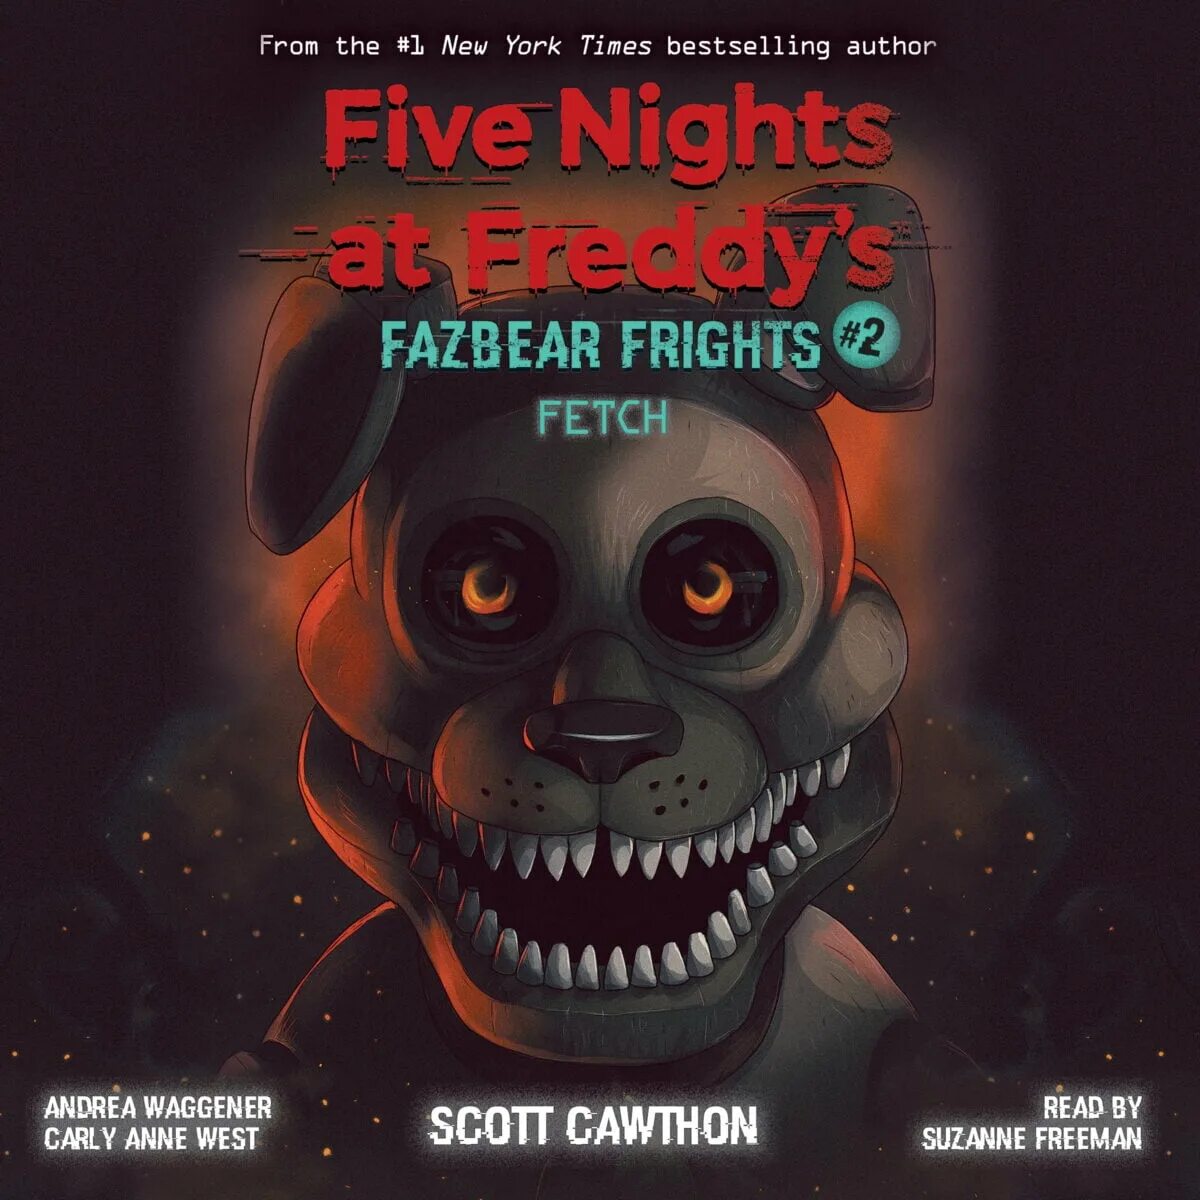 Книга Fazbear's Fright. Five Nights at Freddy s книга Fazbear Fright. Fazbear Frights книги. Книга Фредди Скотт Коутон. Книги фнаф ужасы фазбера